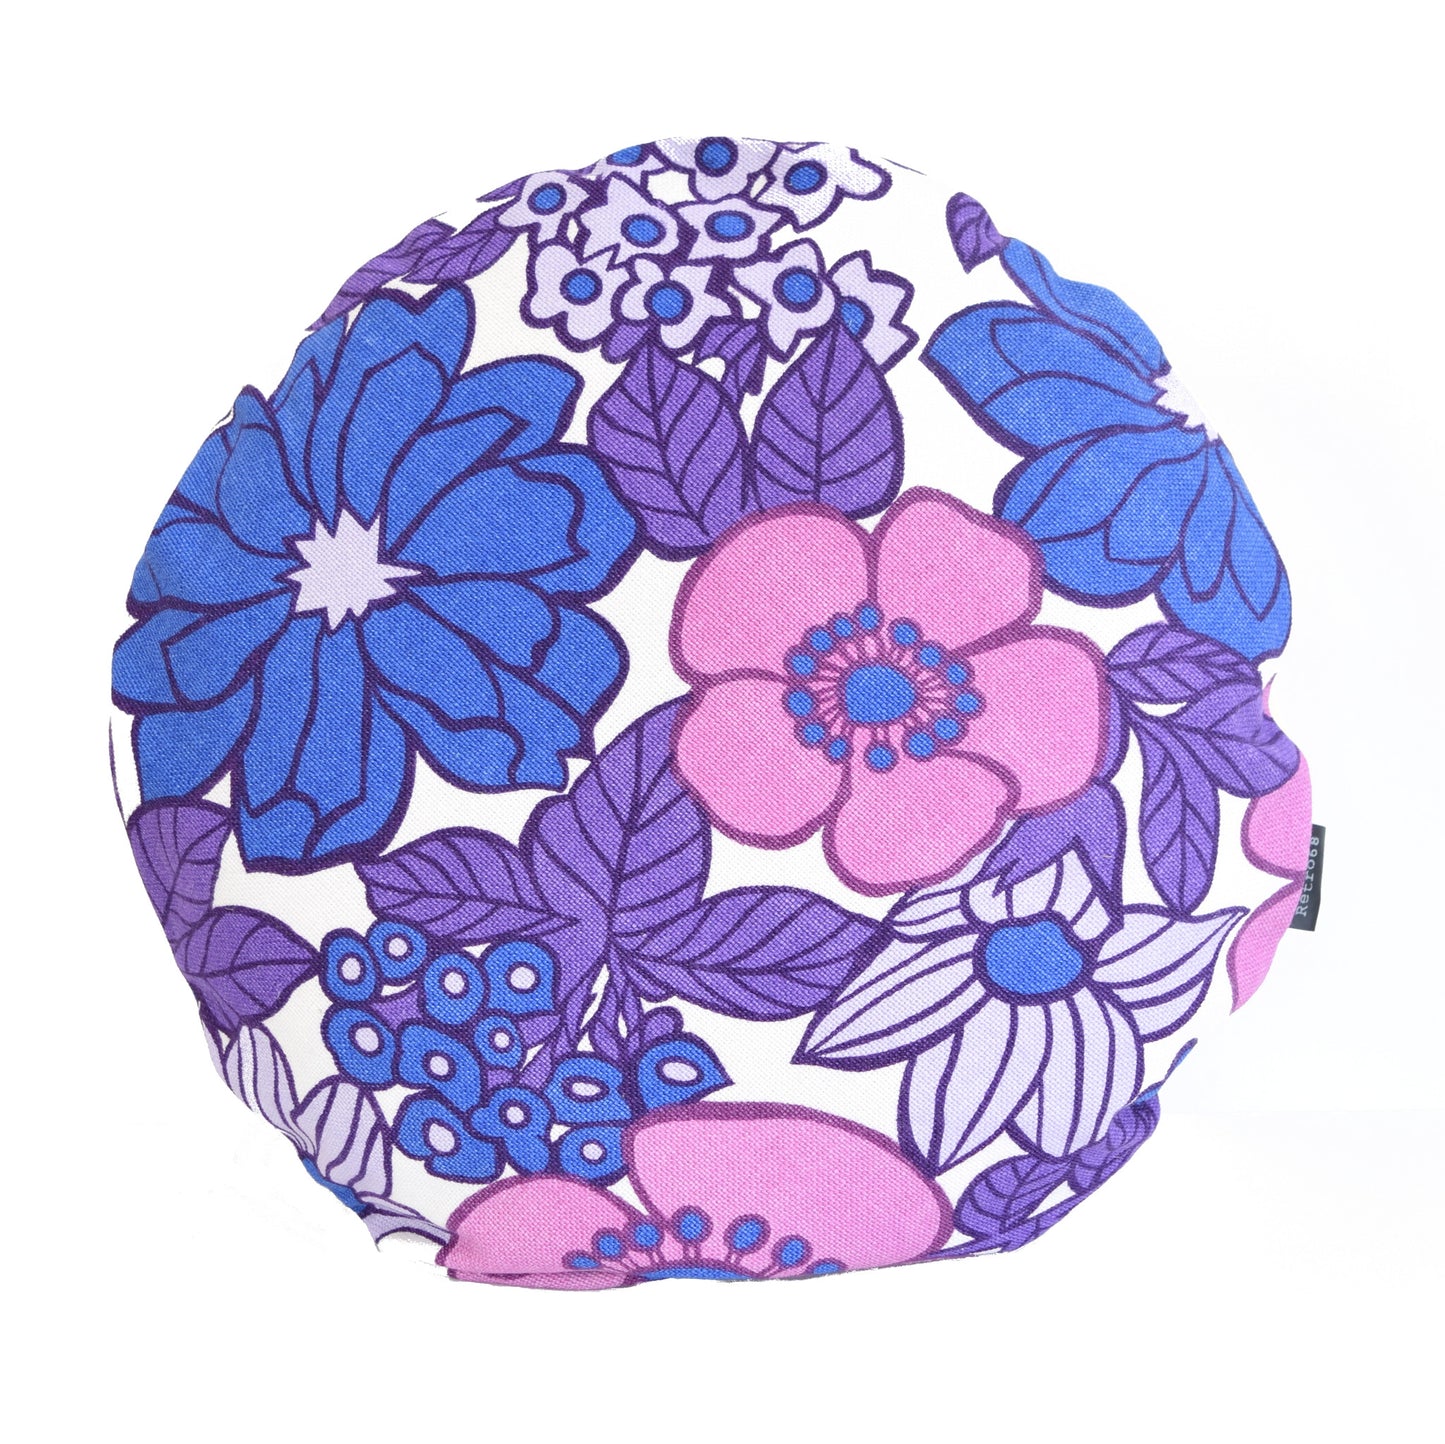 Vintage flower power purple cushion- round